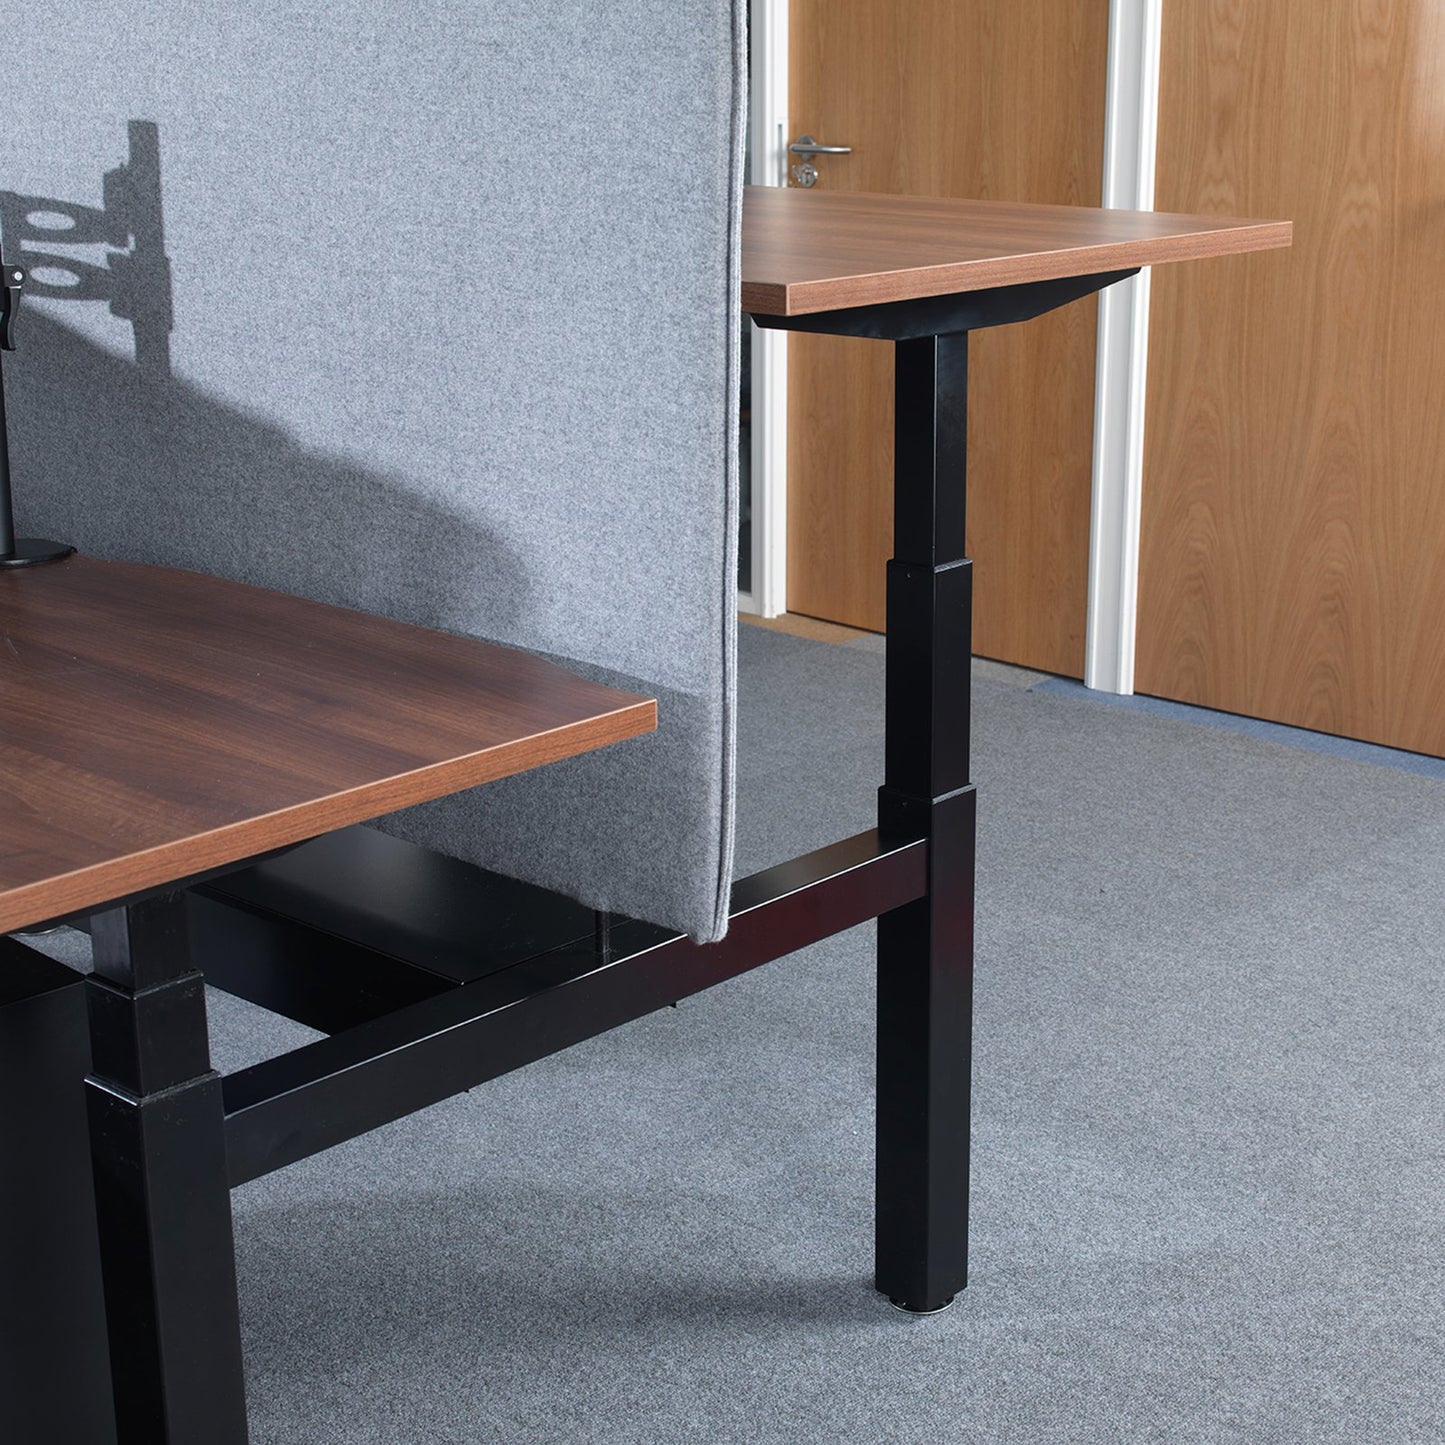 2 Persons - Elev8 Electric Height Adjustable Back-To-Back Desks 140cm wide